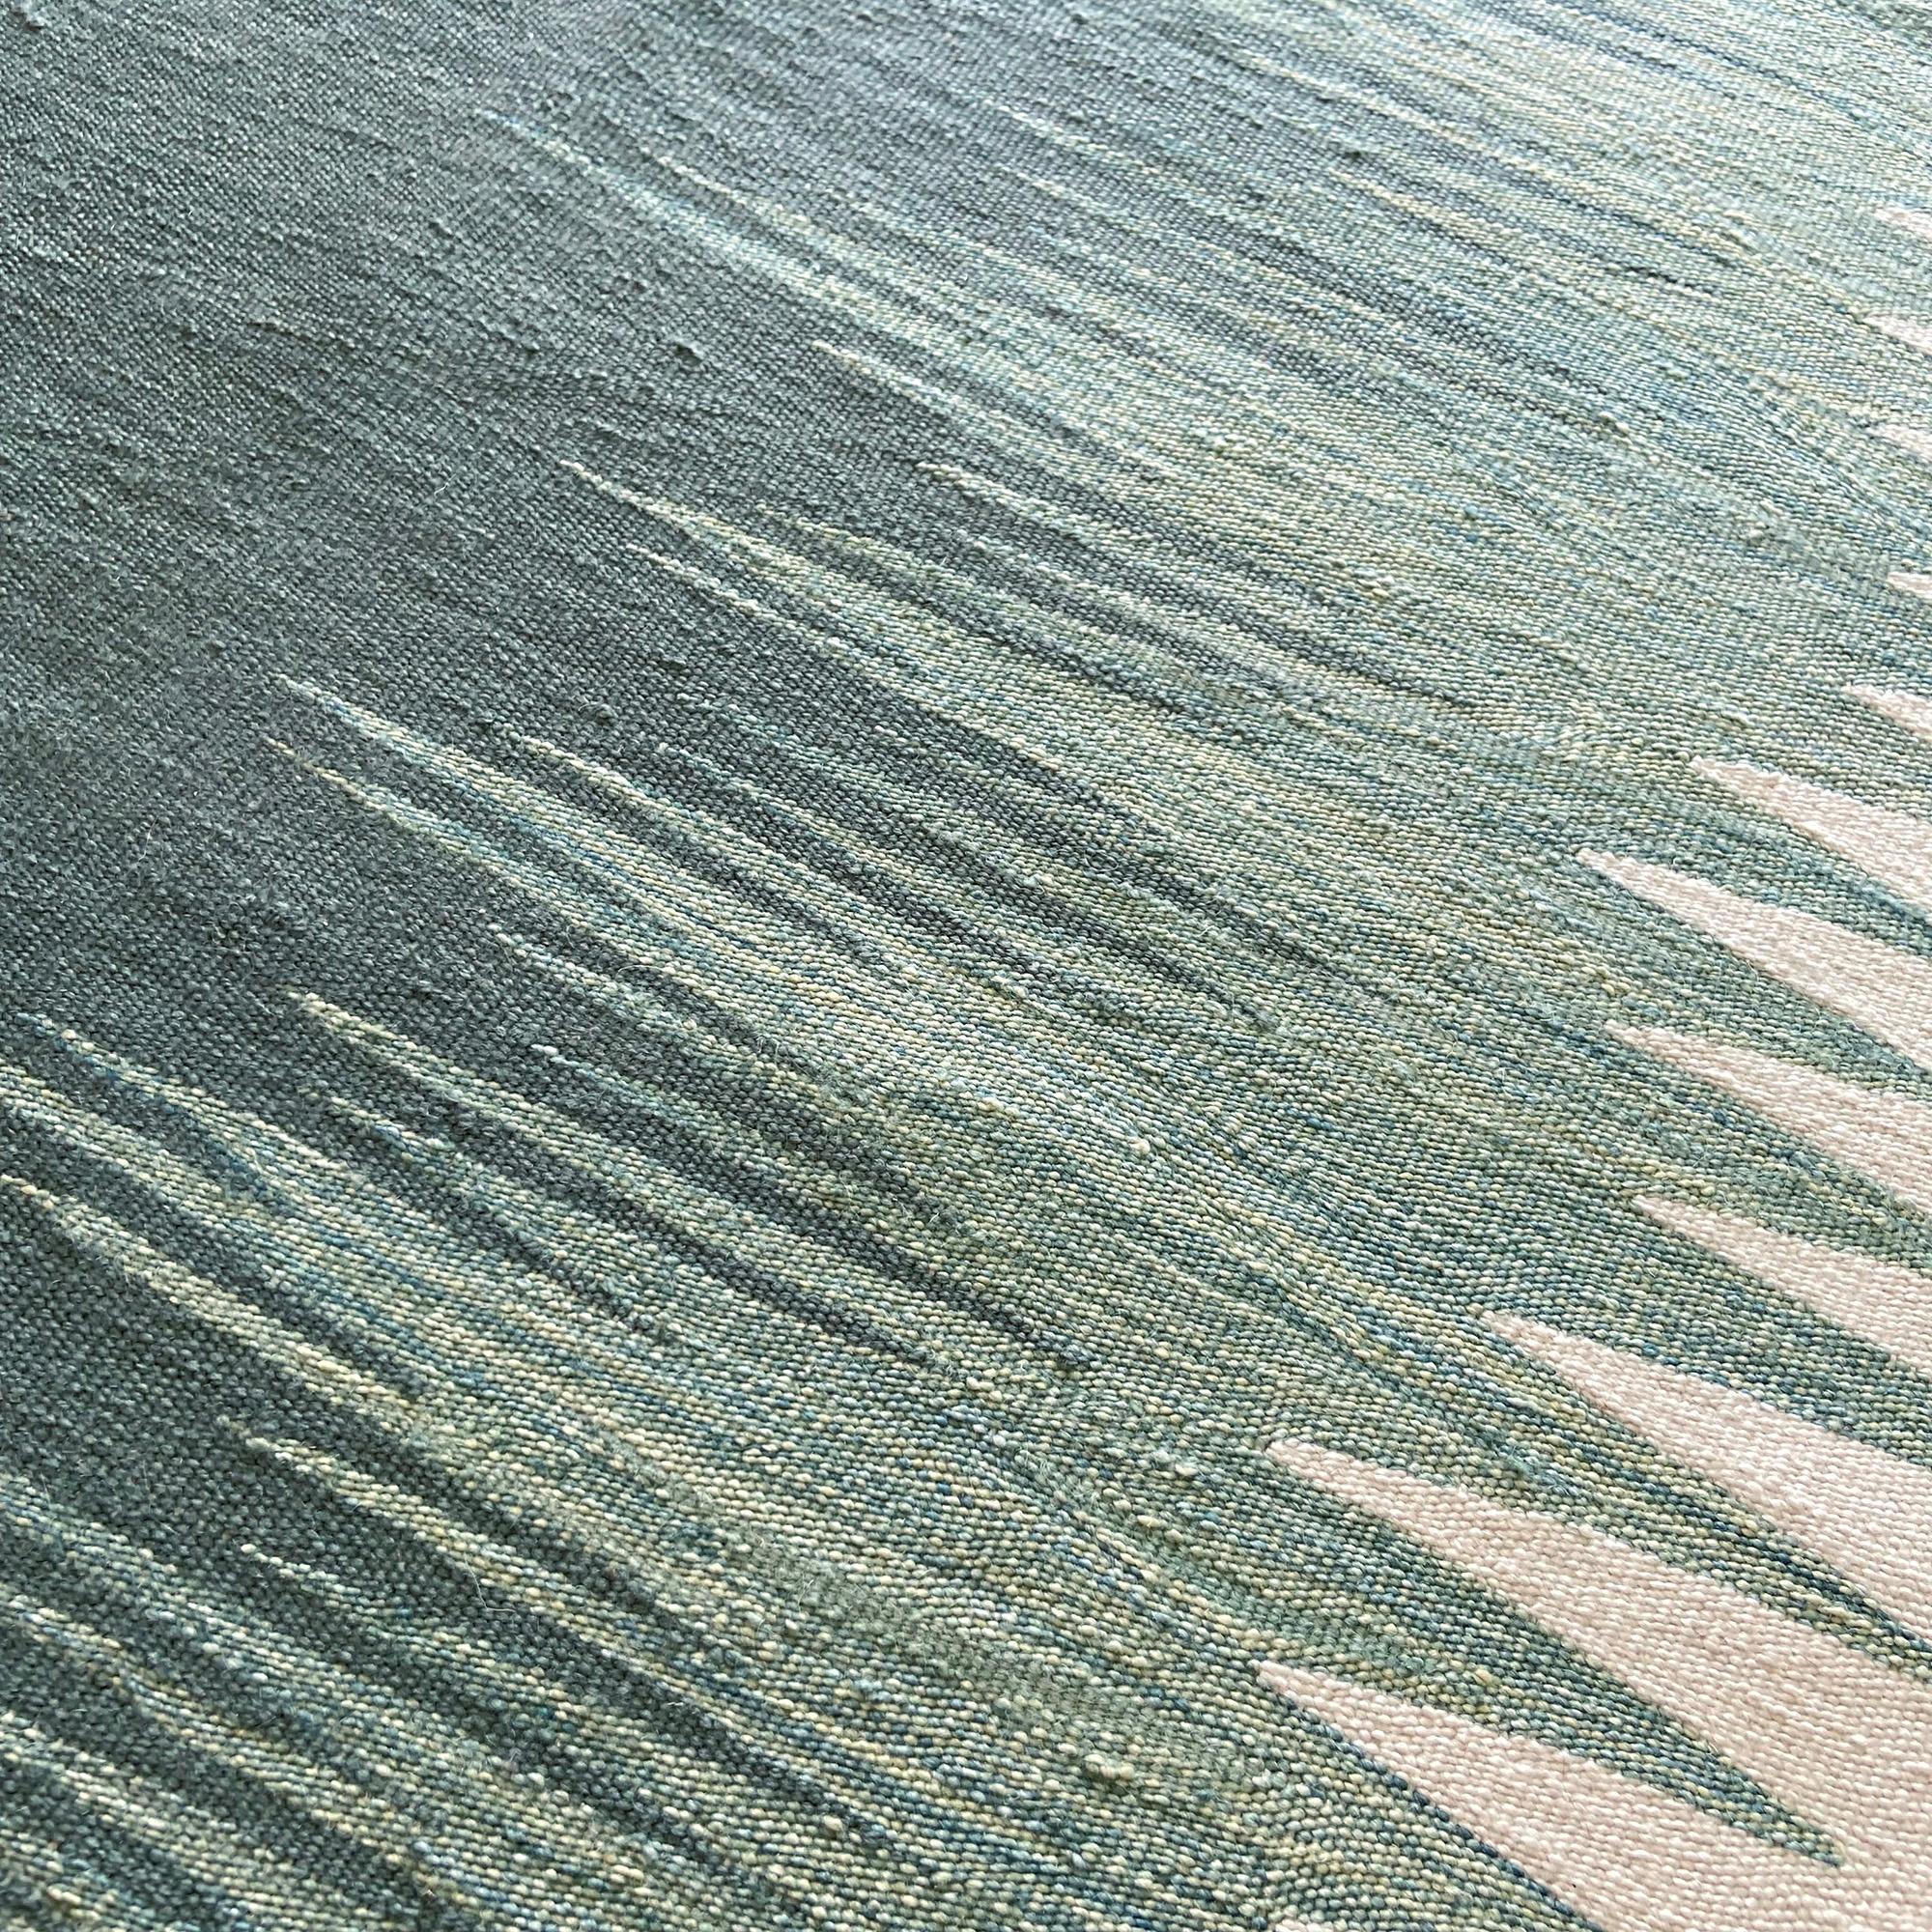 Le tapis kilim Yakamoz No 4 fait partie d'une série de kilims qui s'inspirent de la poésie des reflets lumineux à la surface de la mer. Les motifs abstraits, qui rappellent les transitions de couleurs alternées créées par la lumière réfléchie, sont